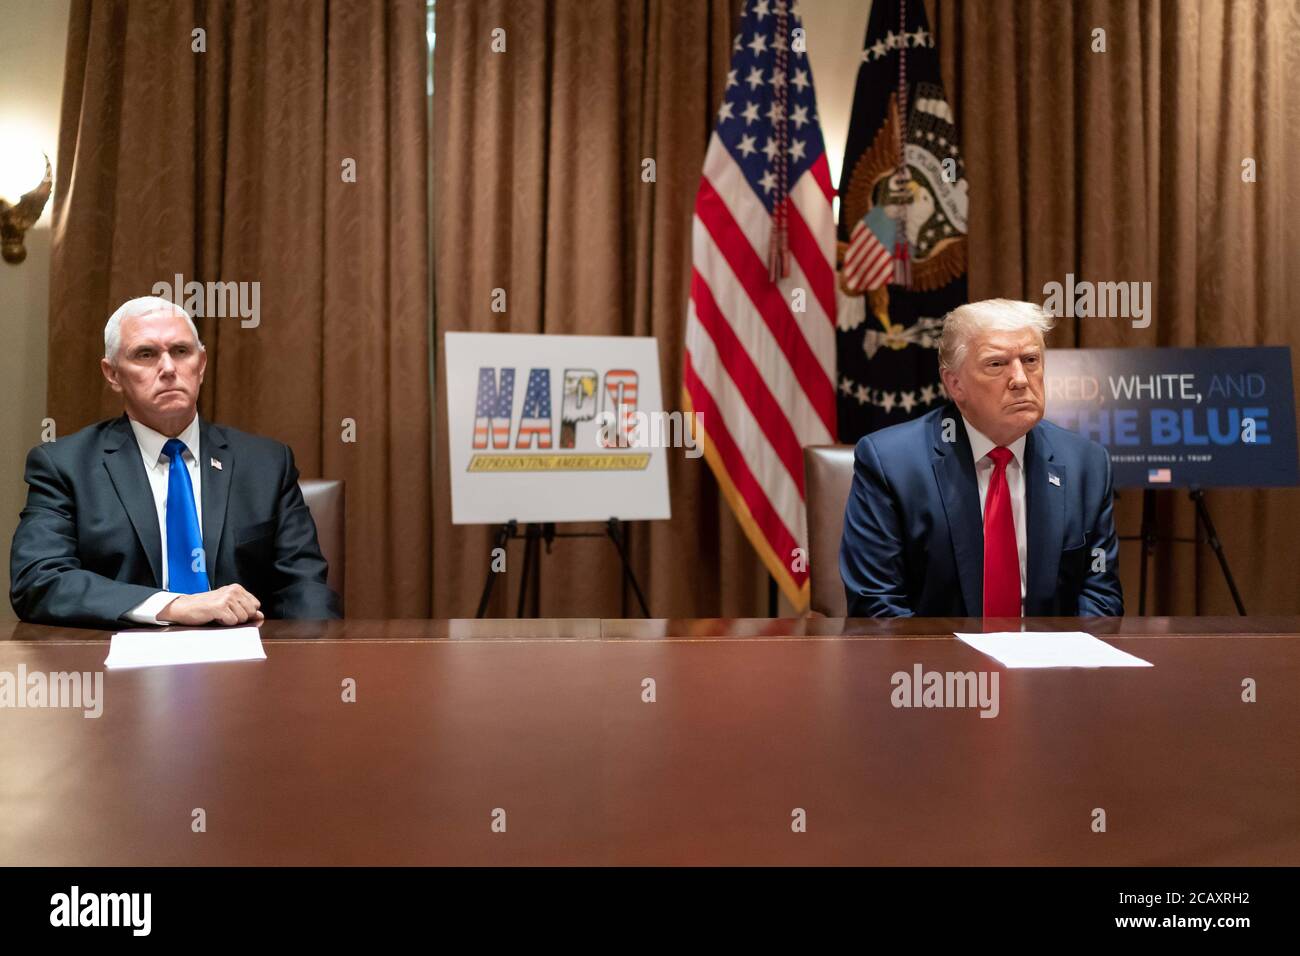 US-Präsident Donald Trump und Vizepräsident Mike Pence, links, während eines Treffens mit der Führung der National Association of Police Organizations im Kabinettsaal des Weißen Hauses 31. Juli 2020 in Washington, DC. Stockfoto